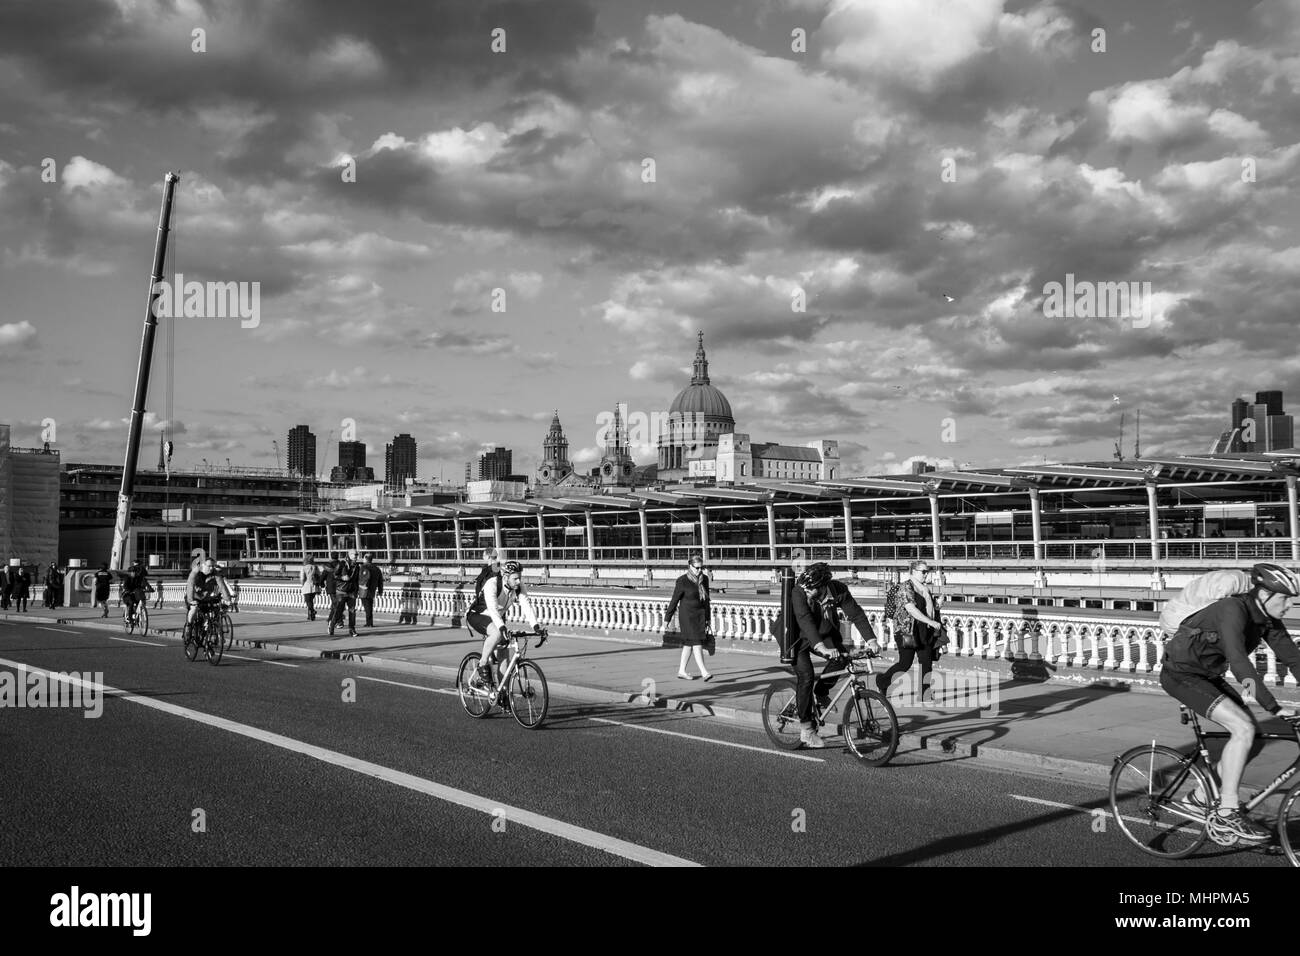 Piétons et cyclistes - la marche et le trajet à vélo au travail - à travers Blackfriars Bridge, Londres avec la Cathédrale St Paul à l'arrière-plan. Banque D'Images